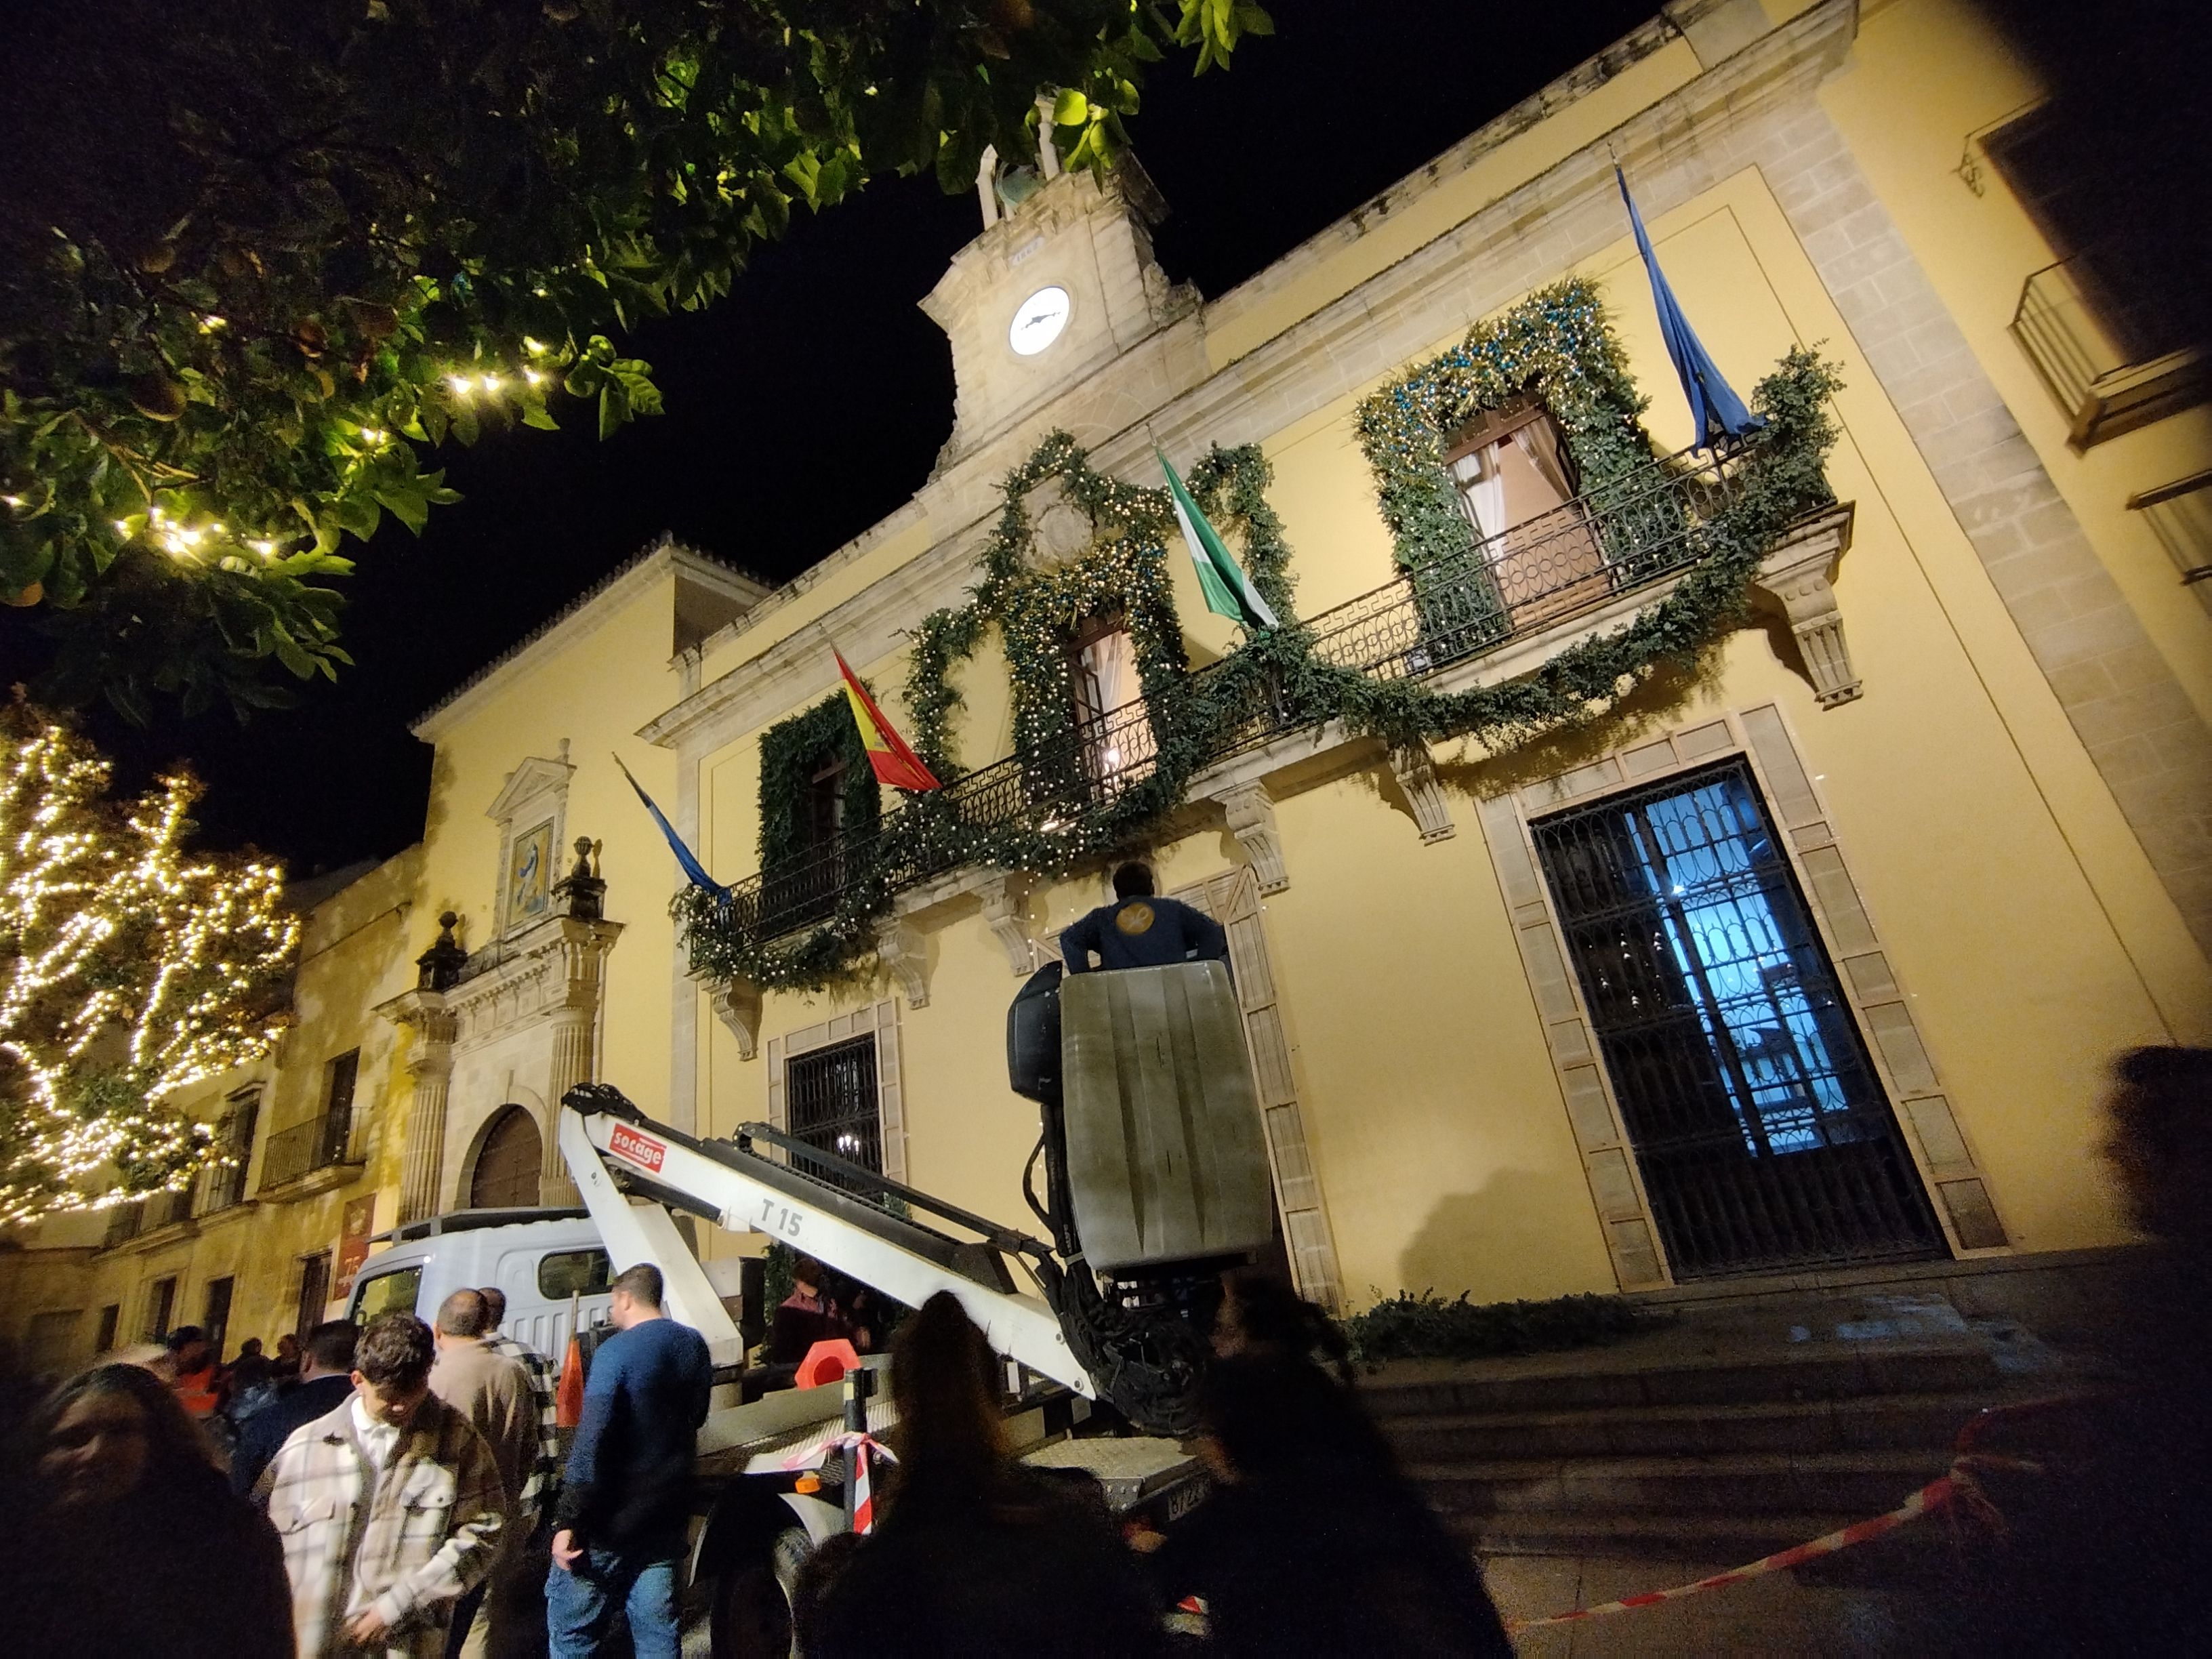 Madrugada de Año Nuevo con frío habitual para la época. Imagen de la fachada del Ayuntamiento de Jerez desde donde Canal sur retransmitirá campanadas.